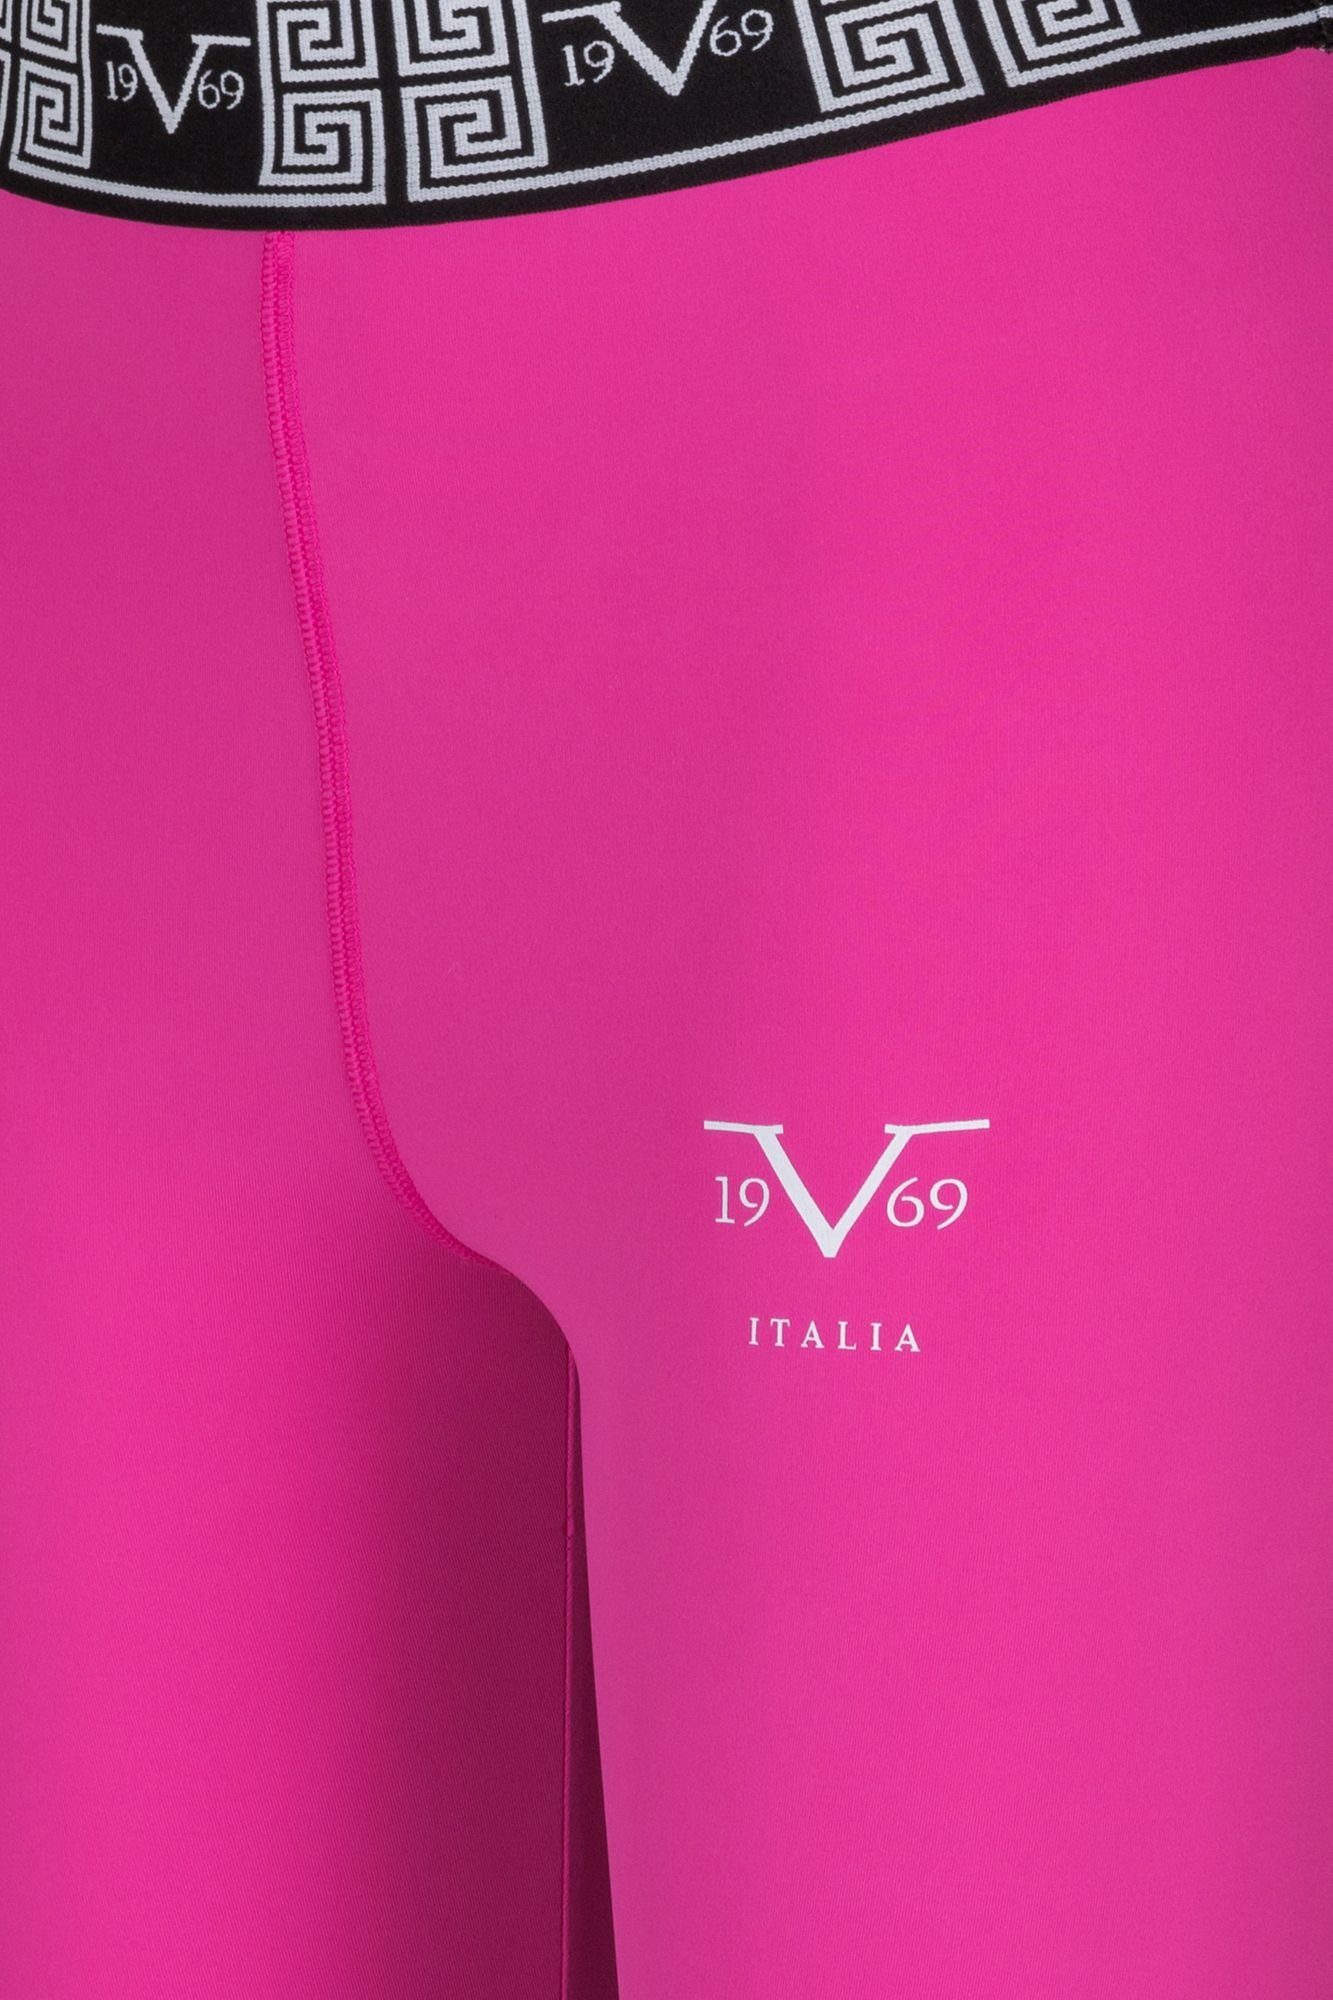 19V69 Italia Versace Yogashorts Alexa by